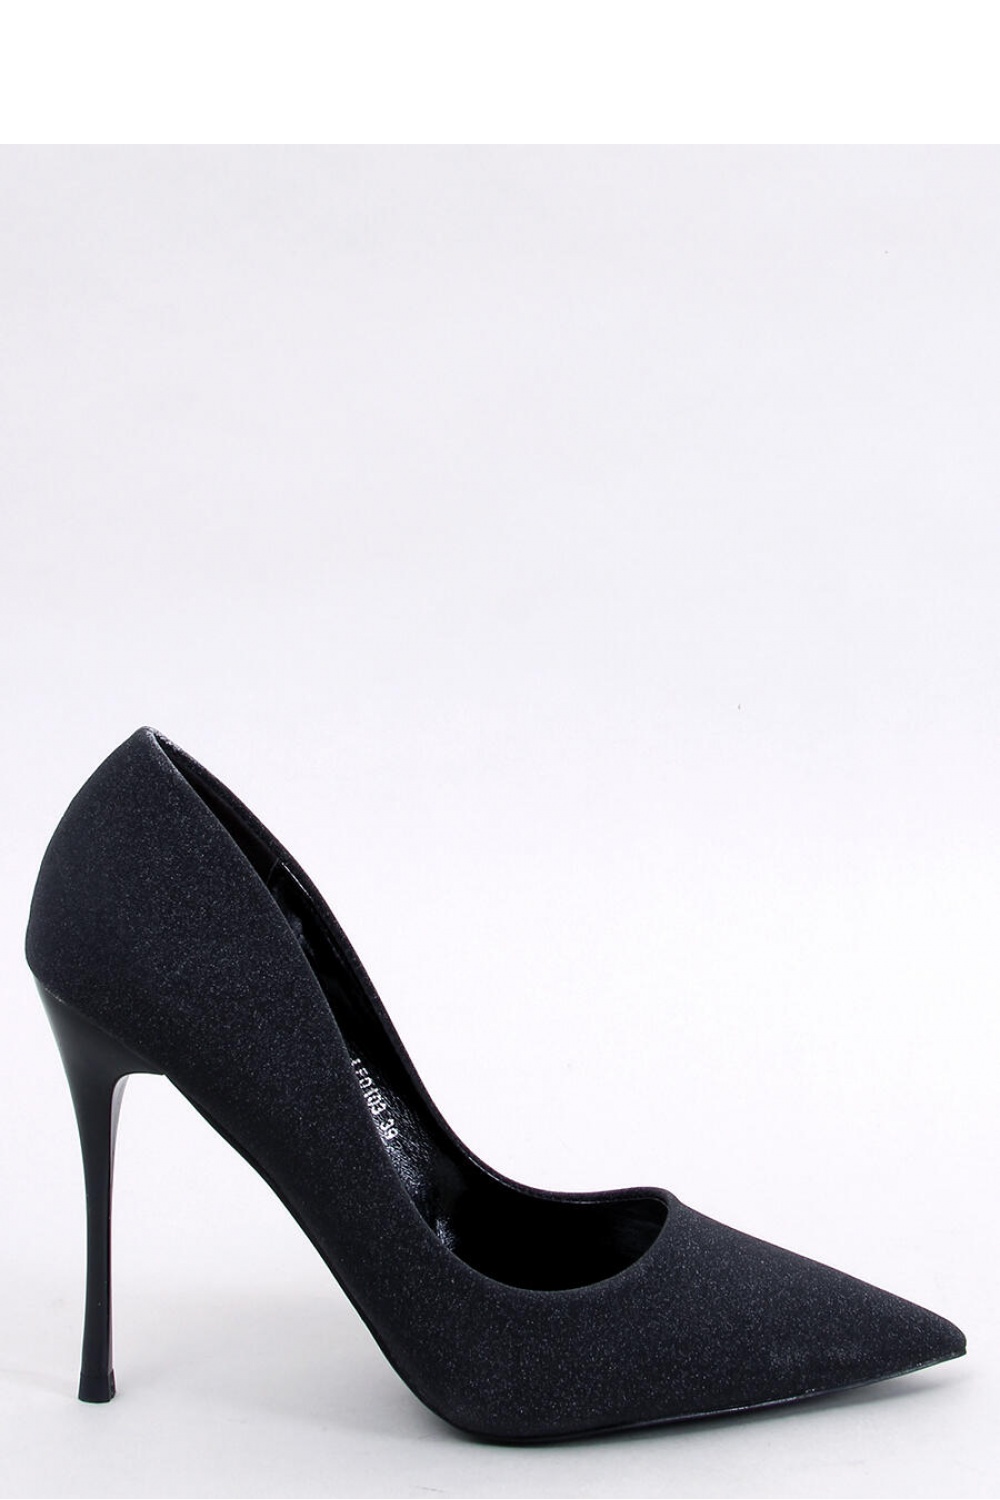 High heels model 191059 Inello